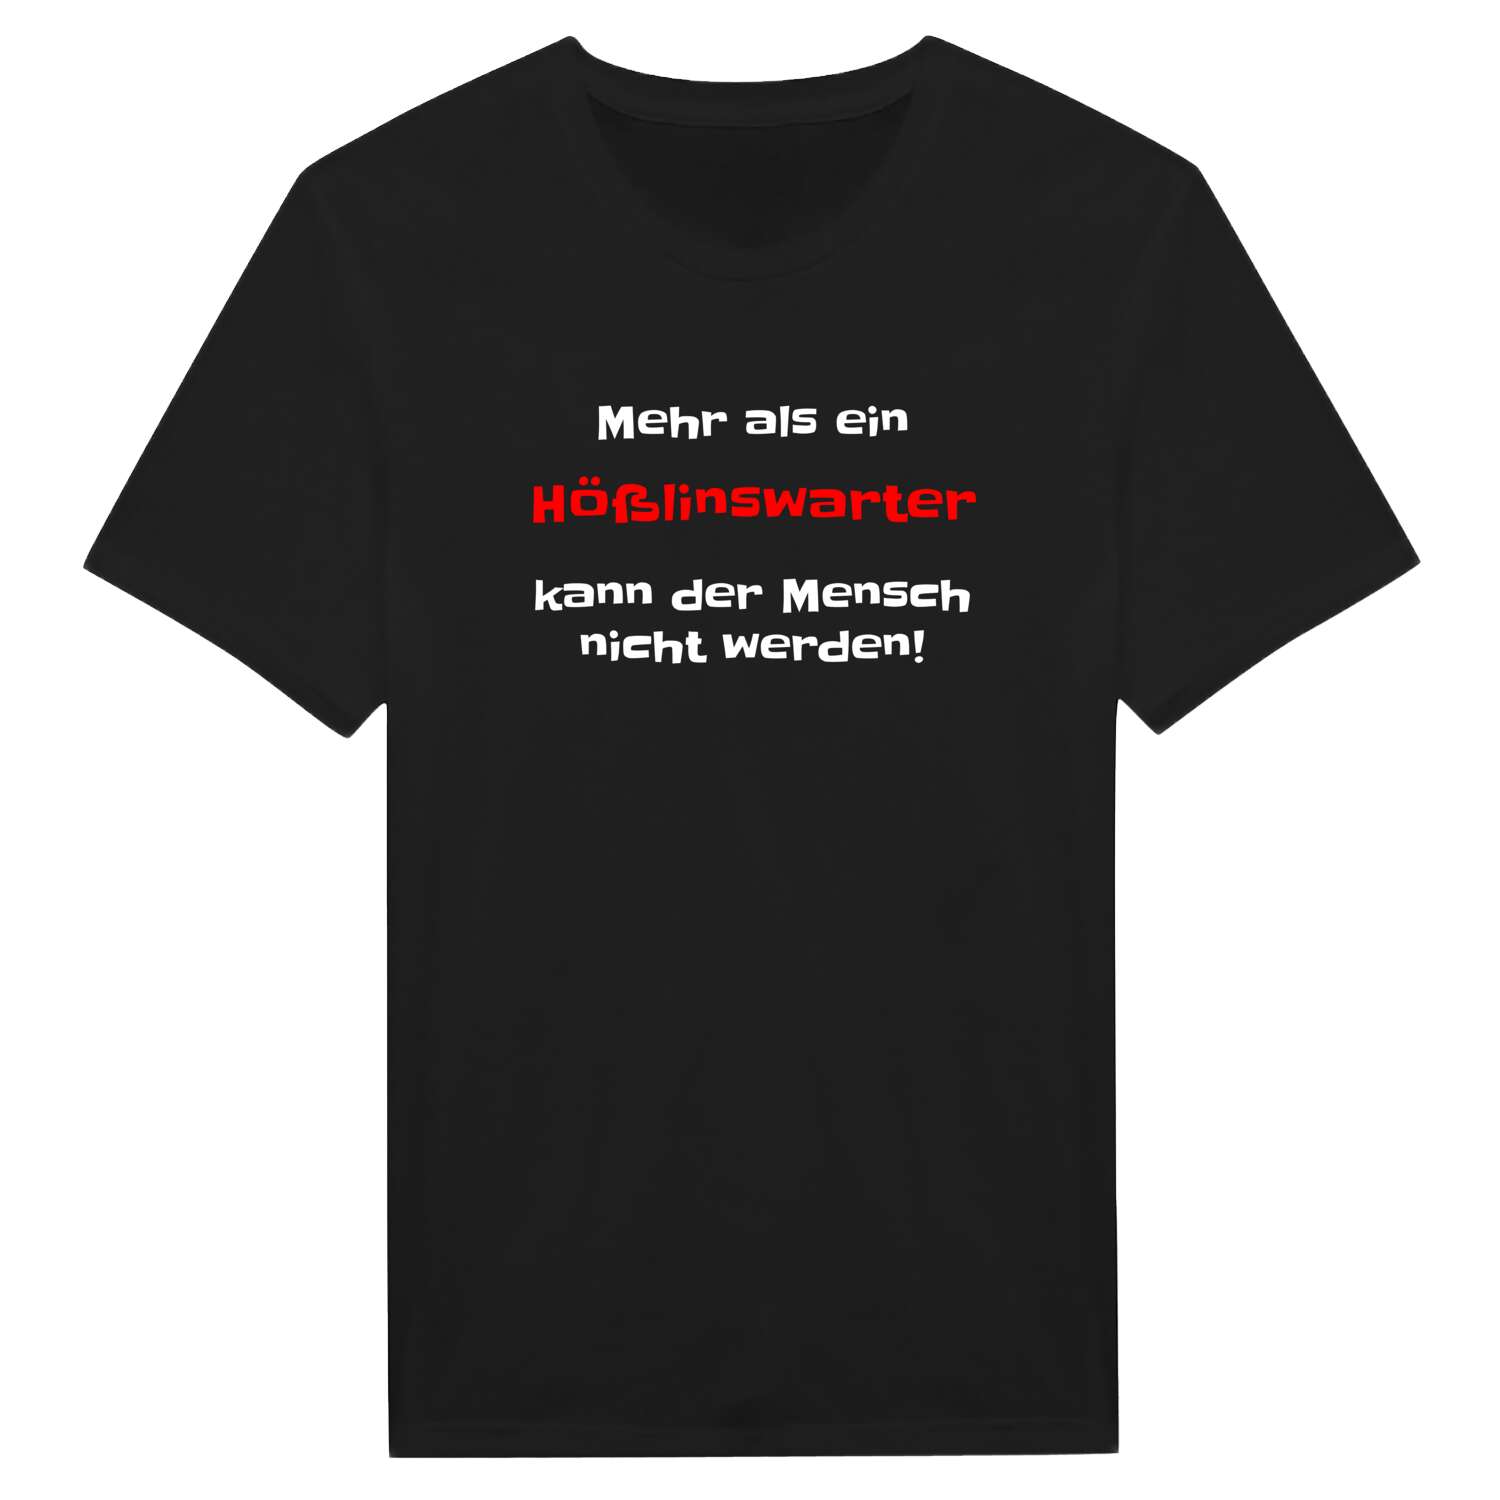 Hößlinswart T-Shirt »Mehr als ein«